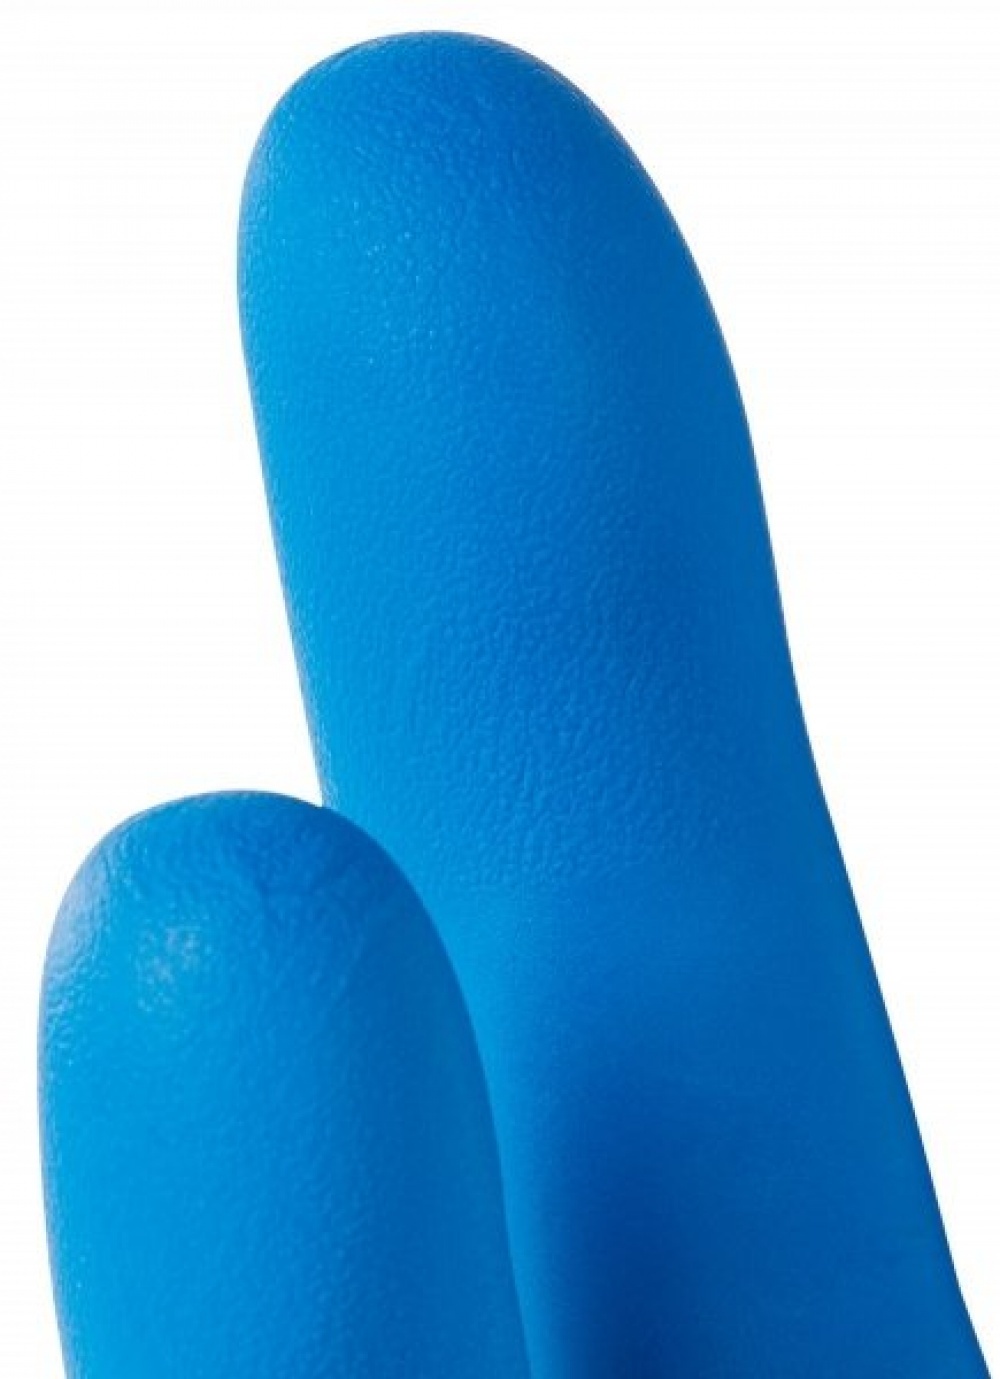 Нитриловые перчатки KleenGuard* G10 Blue Nitrile 